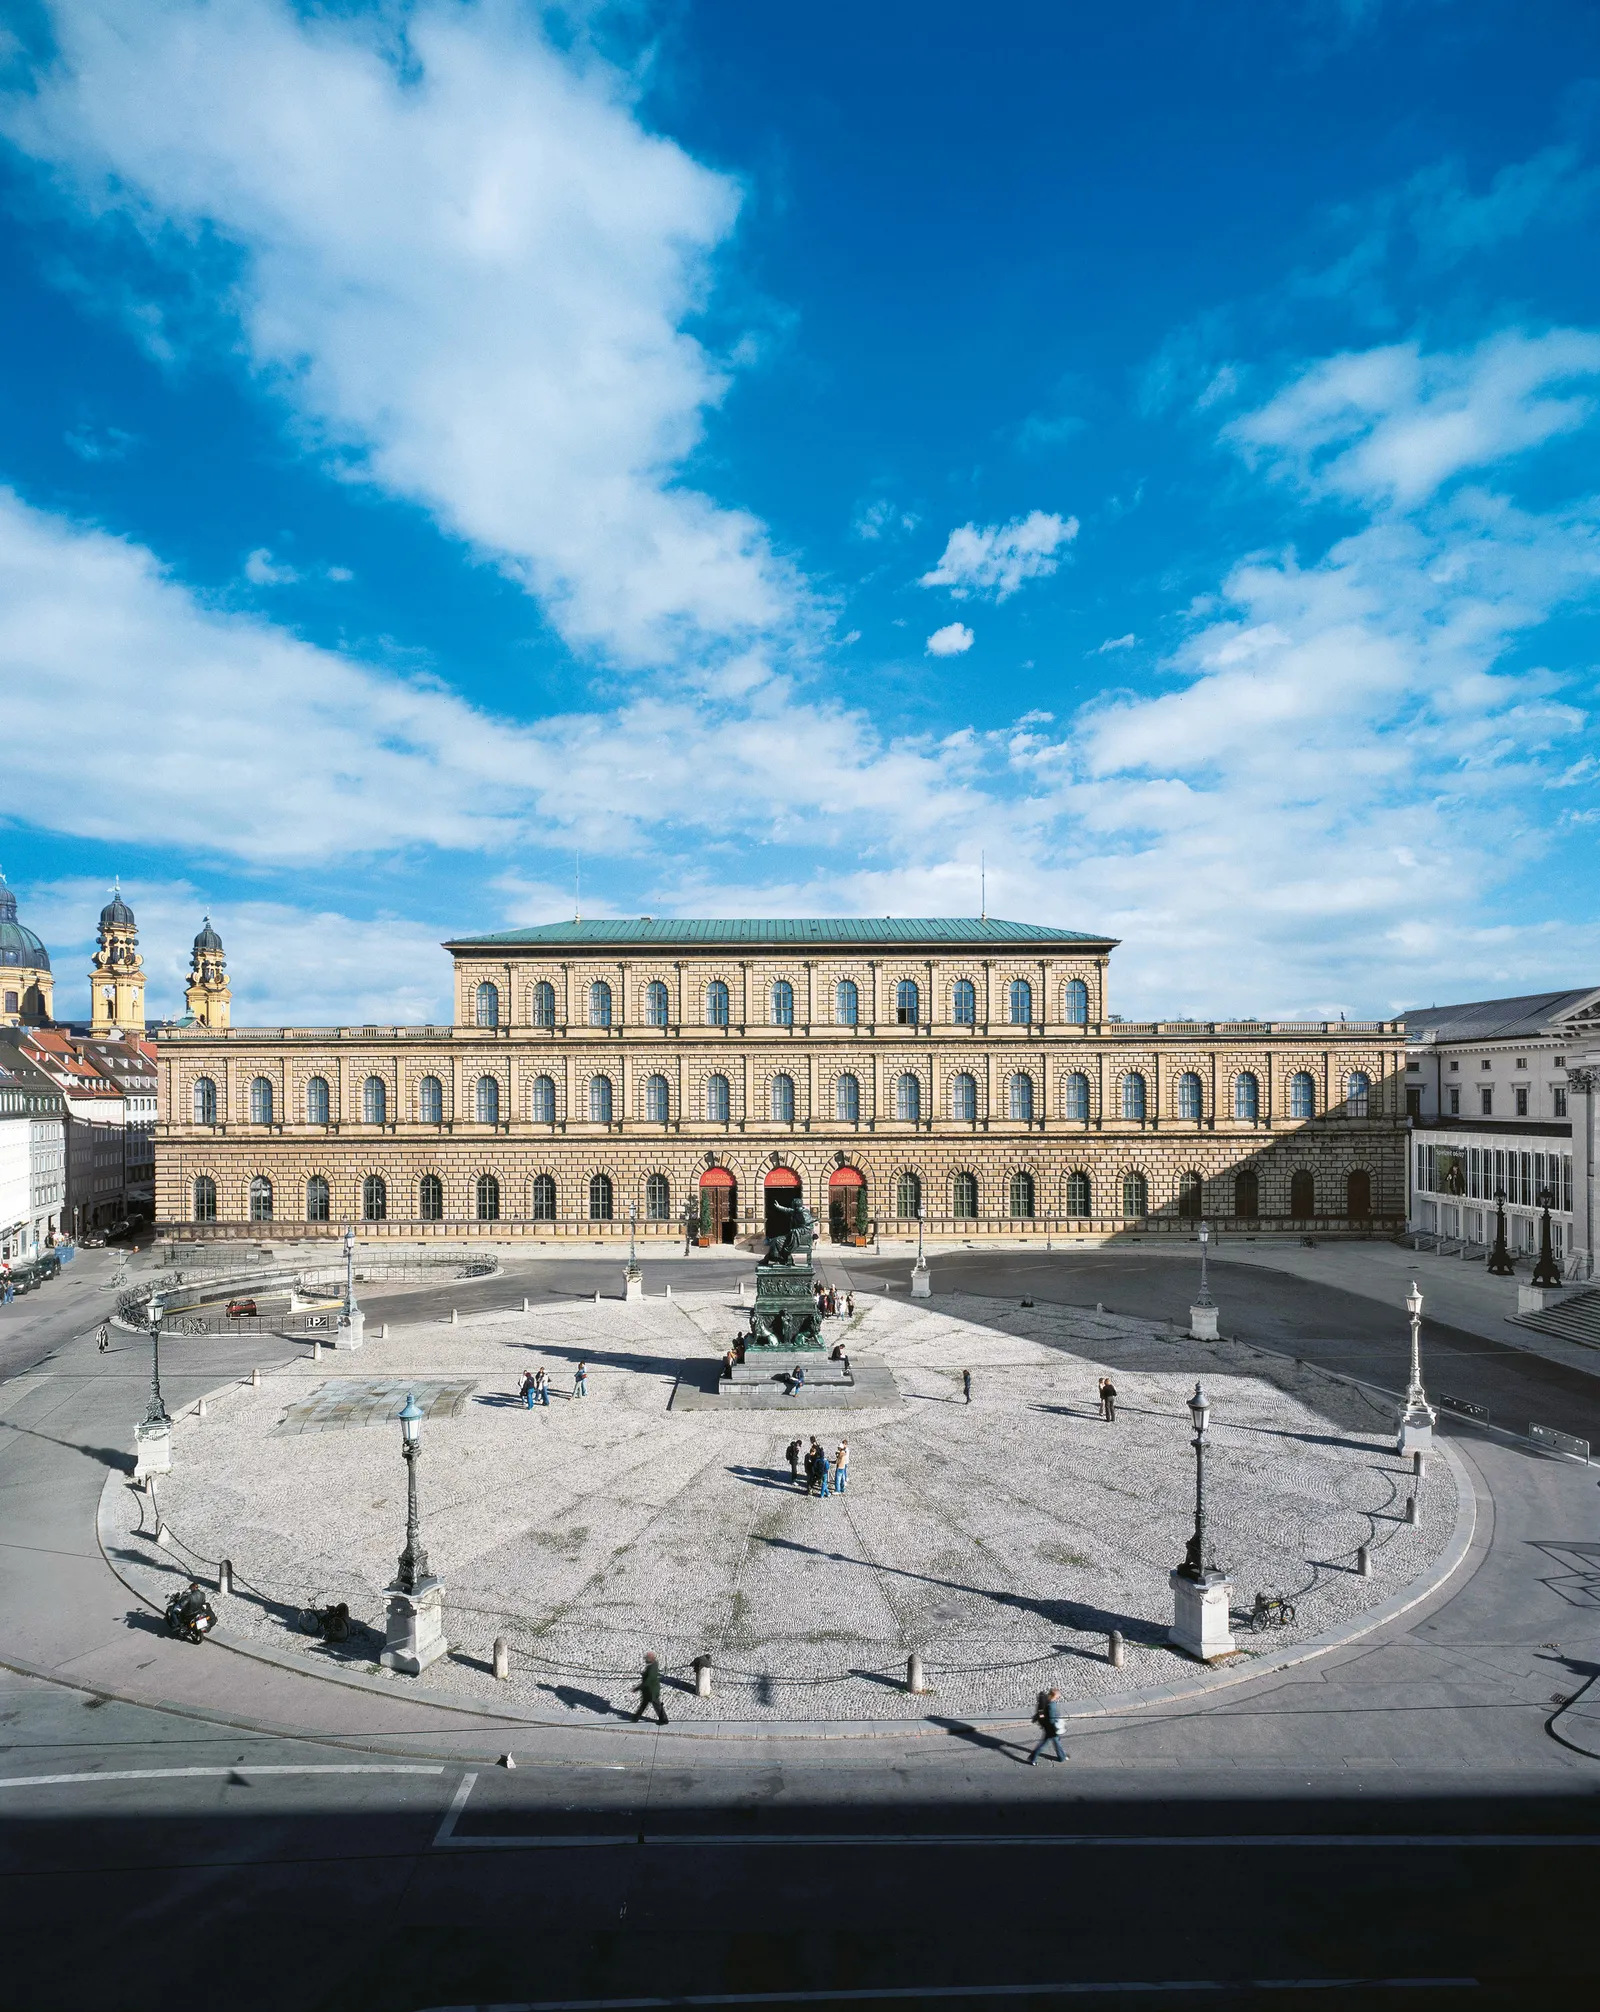 Những phần sớm nhất của cung điện hoàng gia tại vị trí của Residenz ở Munich có từ những năm 1300, và qua nhiều thế kỷ, các cánh, sân trong và các công trình bổ sung mới đã được xây dựng bởi nhiều vị vua khác nhau. Königsbau, hay Tòa nhà của Vua, có niên đại từ thời Vua Ludwig I, người trị vì từ năm 1825 đến năm 1848. Có một chút bí ẩn xung quanh lý do tại sao nó lại giống cung điện Medici đến vậy. Ludwig I đã ra lệnh rõ ràng cho kiến ​​trúc sư triều đình của ông, Leo von Klenze, xây dựng mô hình tòa nhà dựa trên cung điện trước đó ở Florence. Klenze cũng sử dụng Palazzo Rucellai, nằm ở Florence, như một mô hình khác.